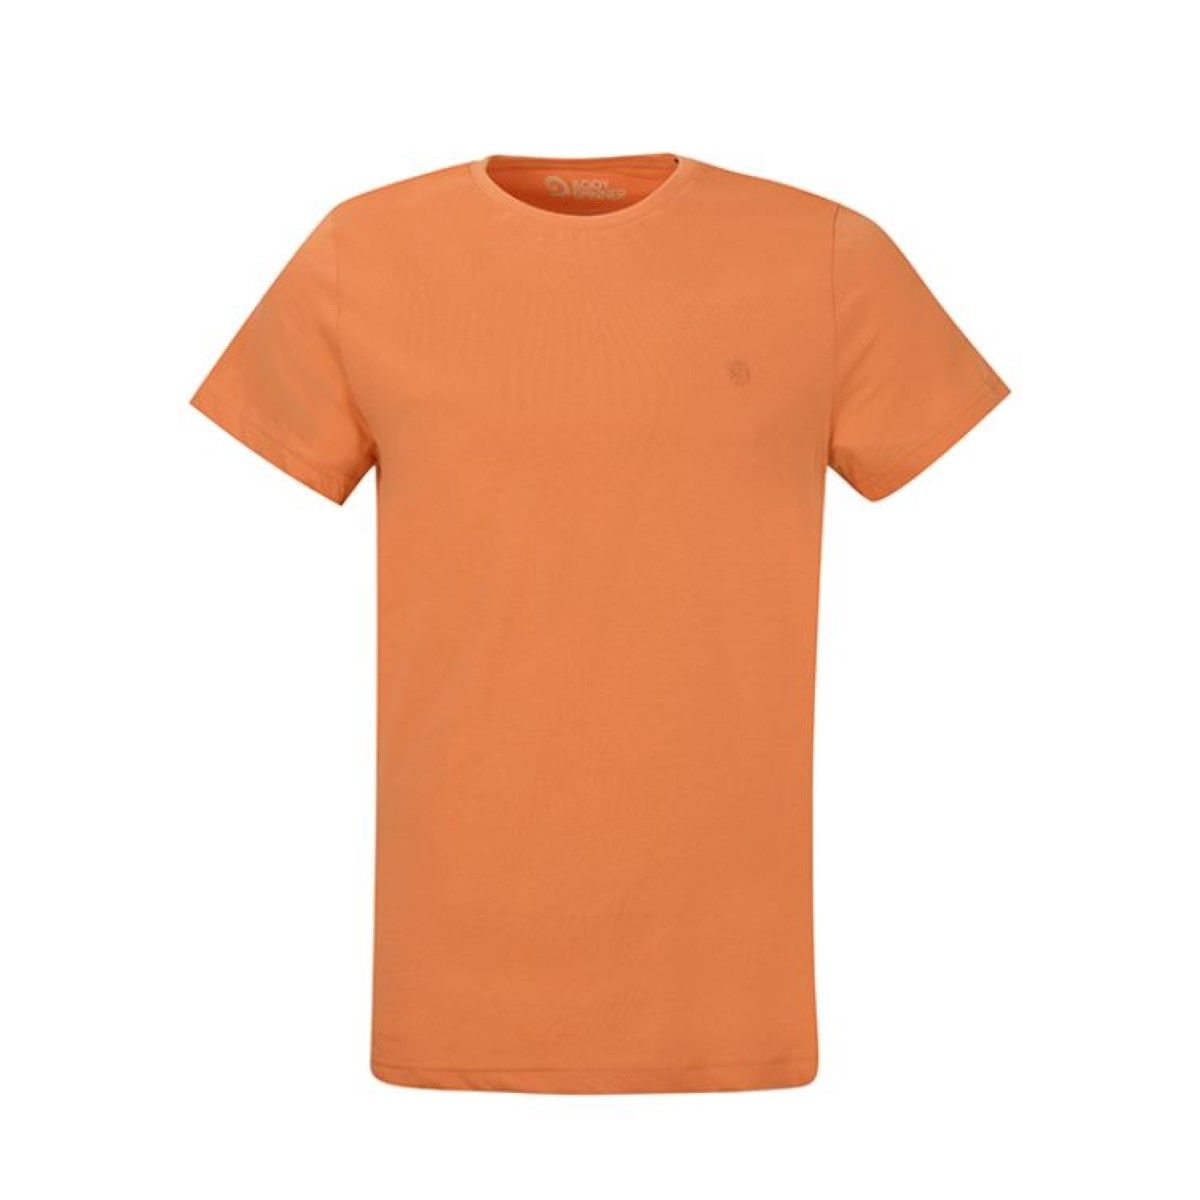 تیشرت آستین کوتاه مردانه بادی اسپینر مدل 11964737 کد 1 رنگ نارنجی -  - 1